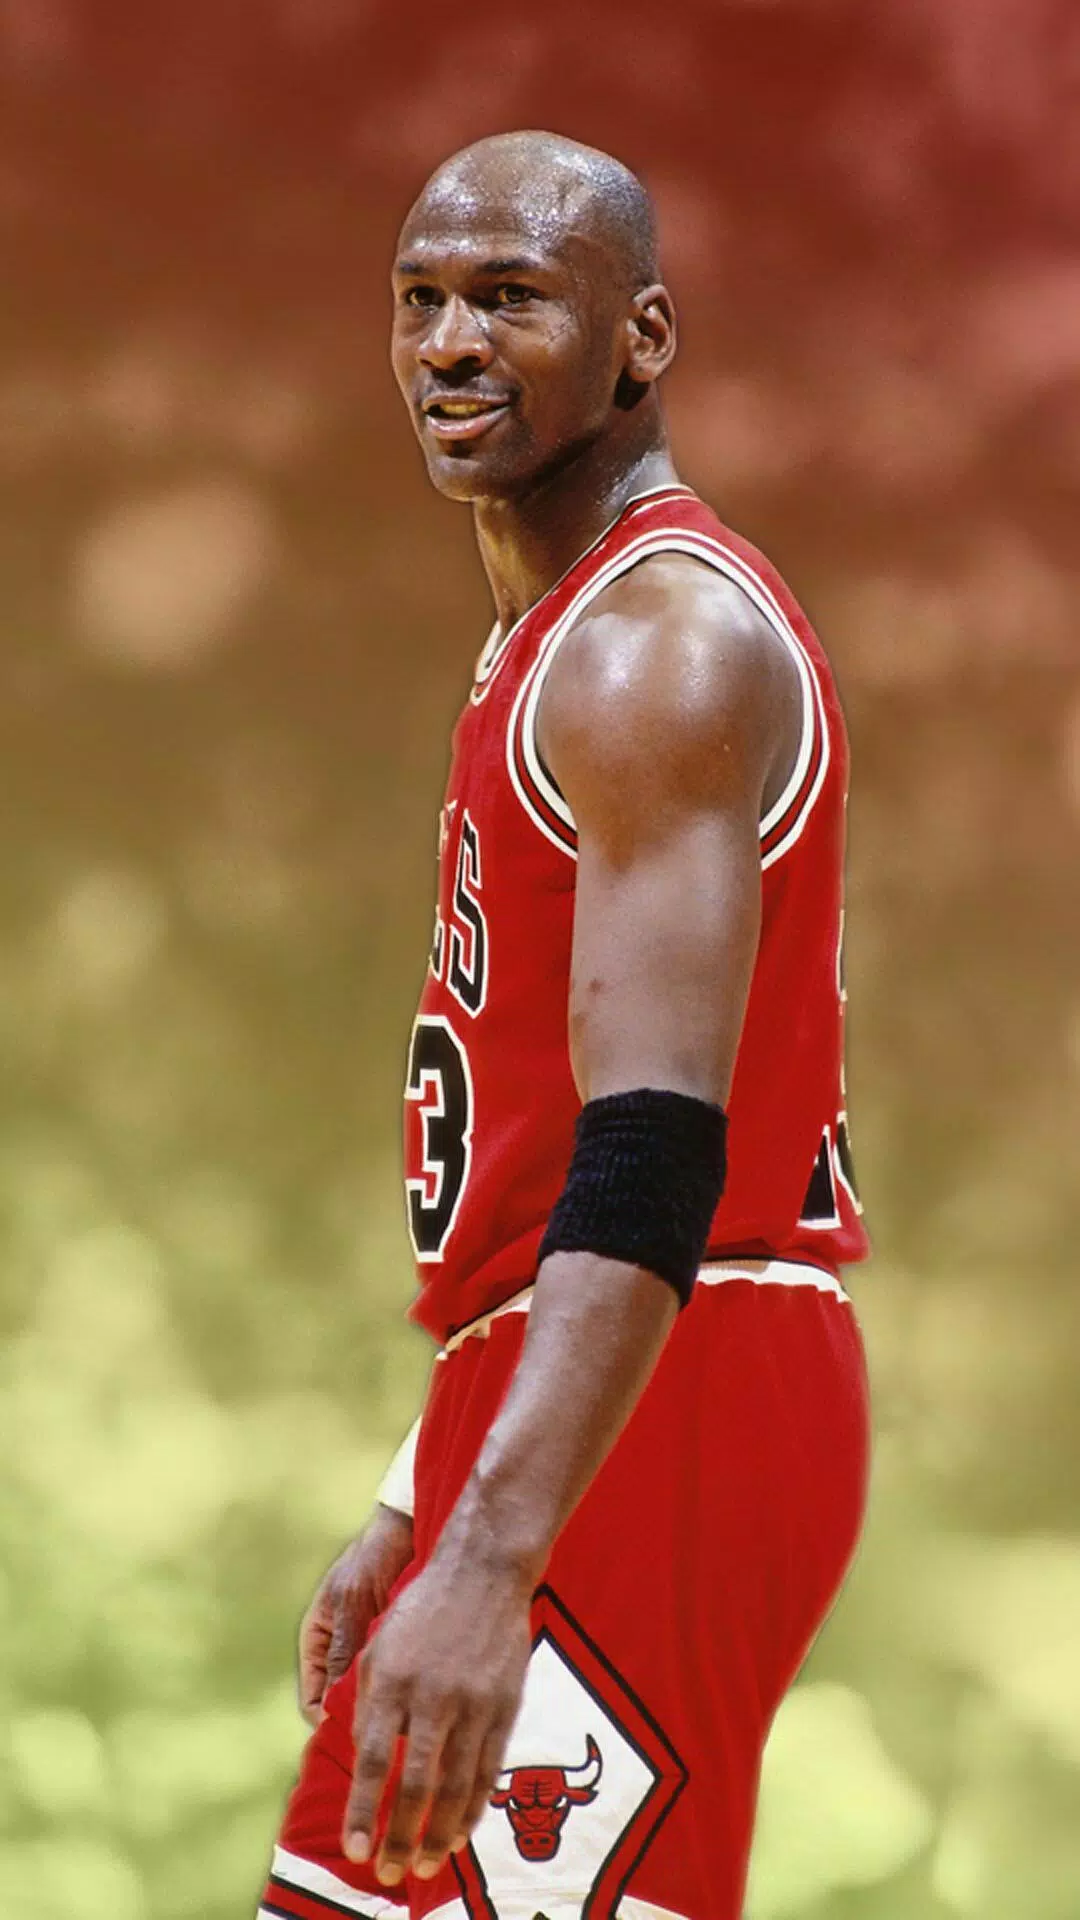 Michael Jordan Cool Wallpaper - NawPic